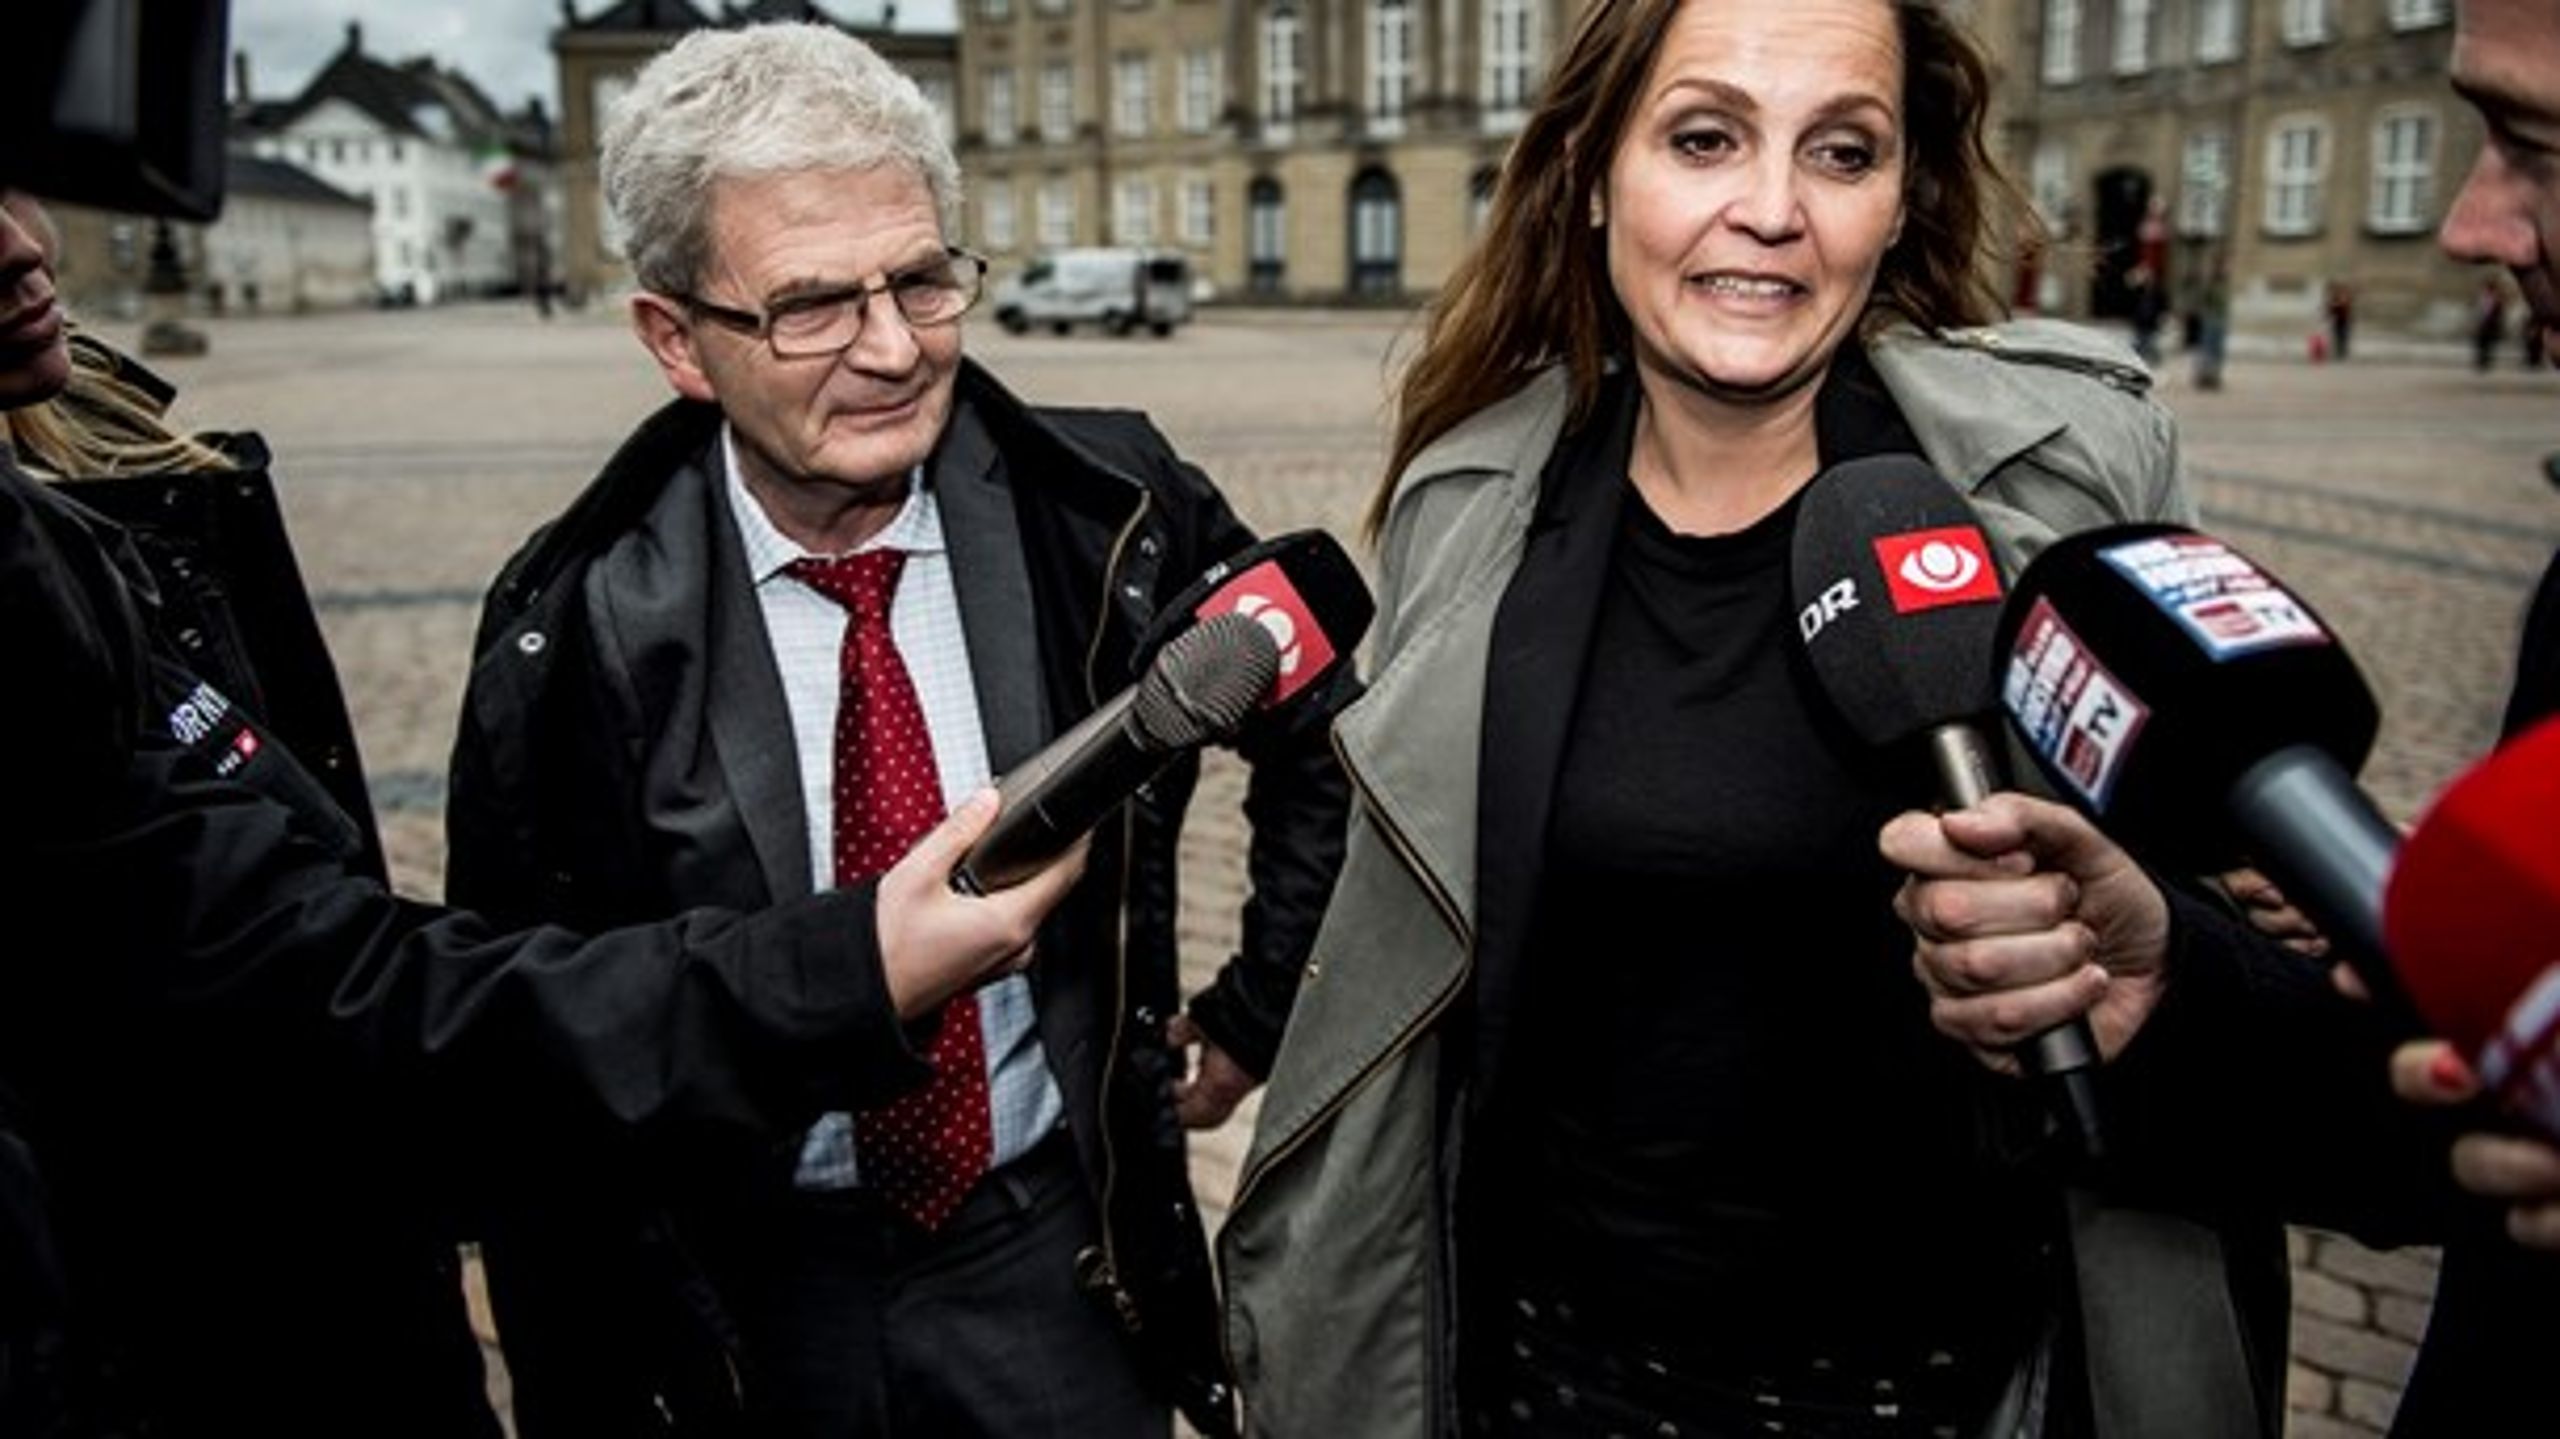 Holger K. Nielsen (SF) og Pia Olsen Dyhr (SF) ankommer til Amalienborg 19. juni 2015 for at pege på Danmarks kommende statsminister.&nbsp;